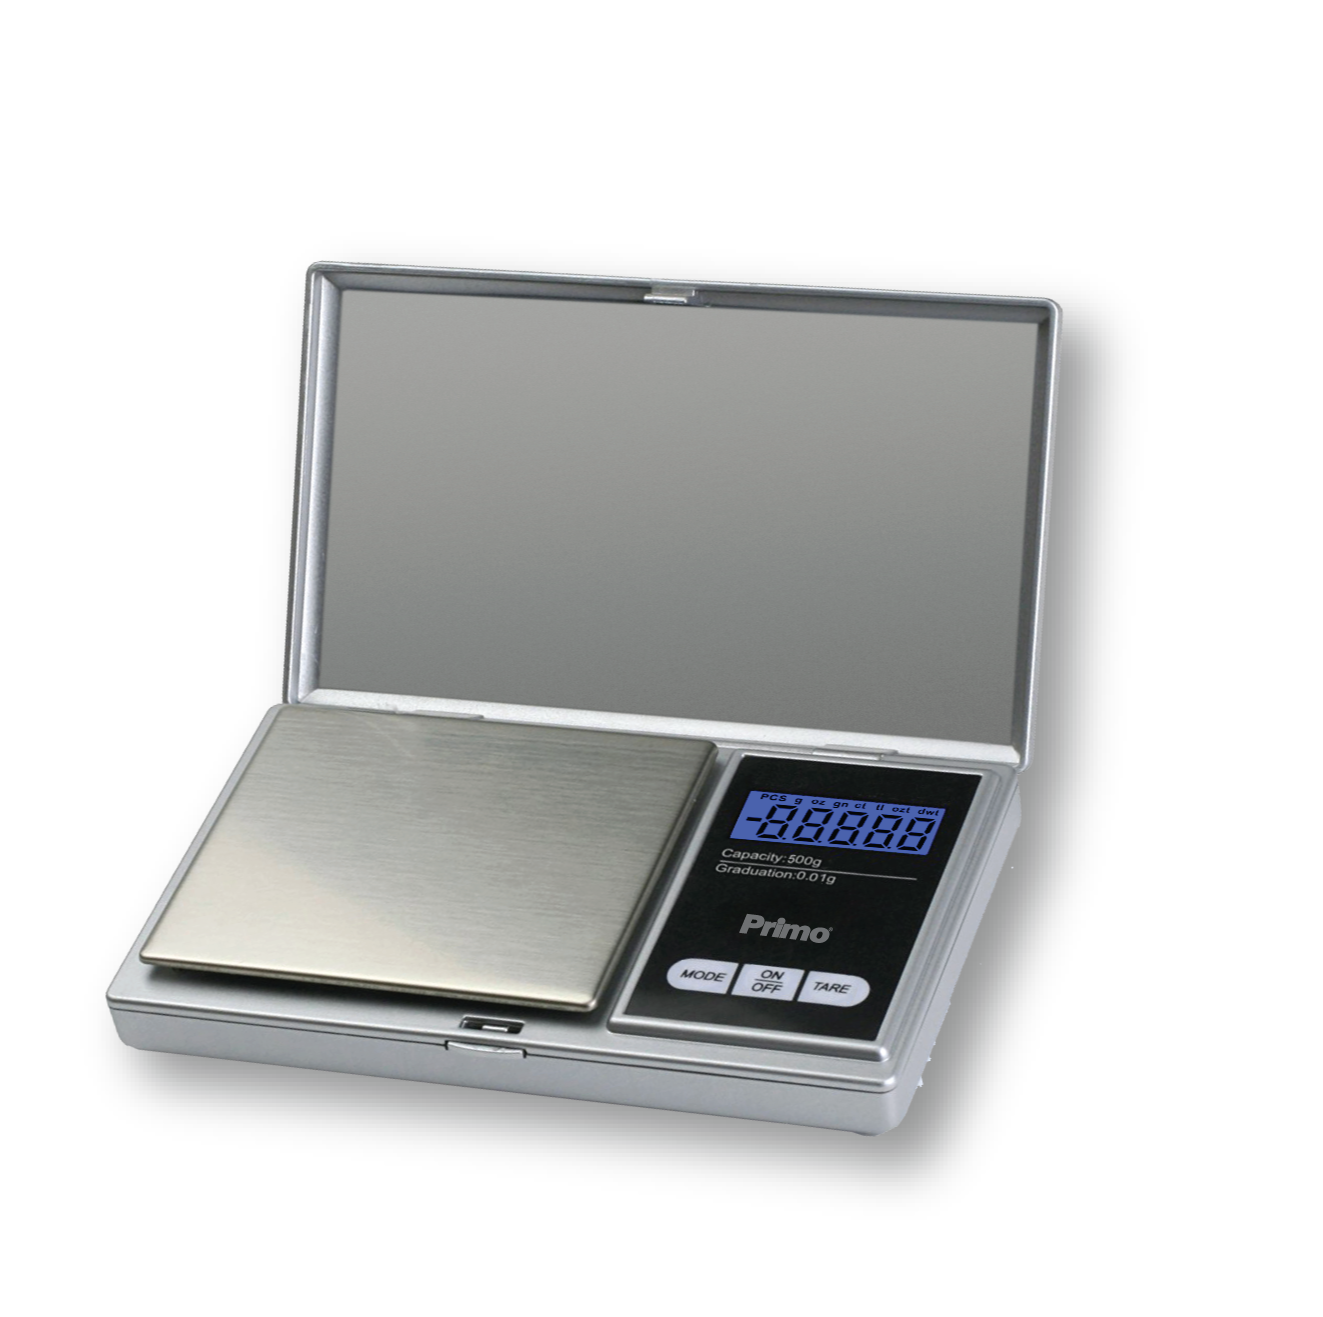 Precision kitchen scale PRJS-40335 Primo digital 500g-0.01g illuminated screen Silver